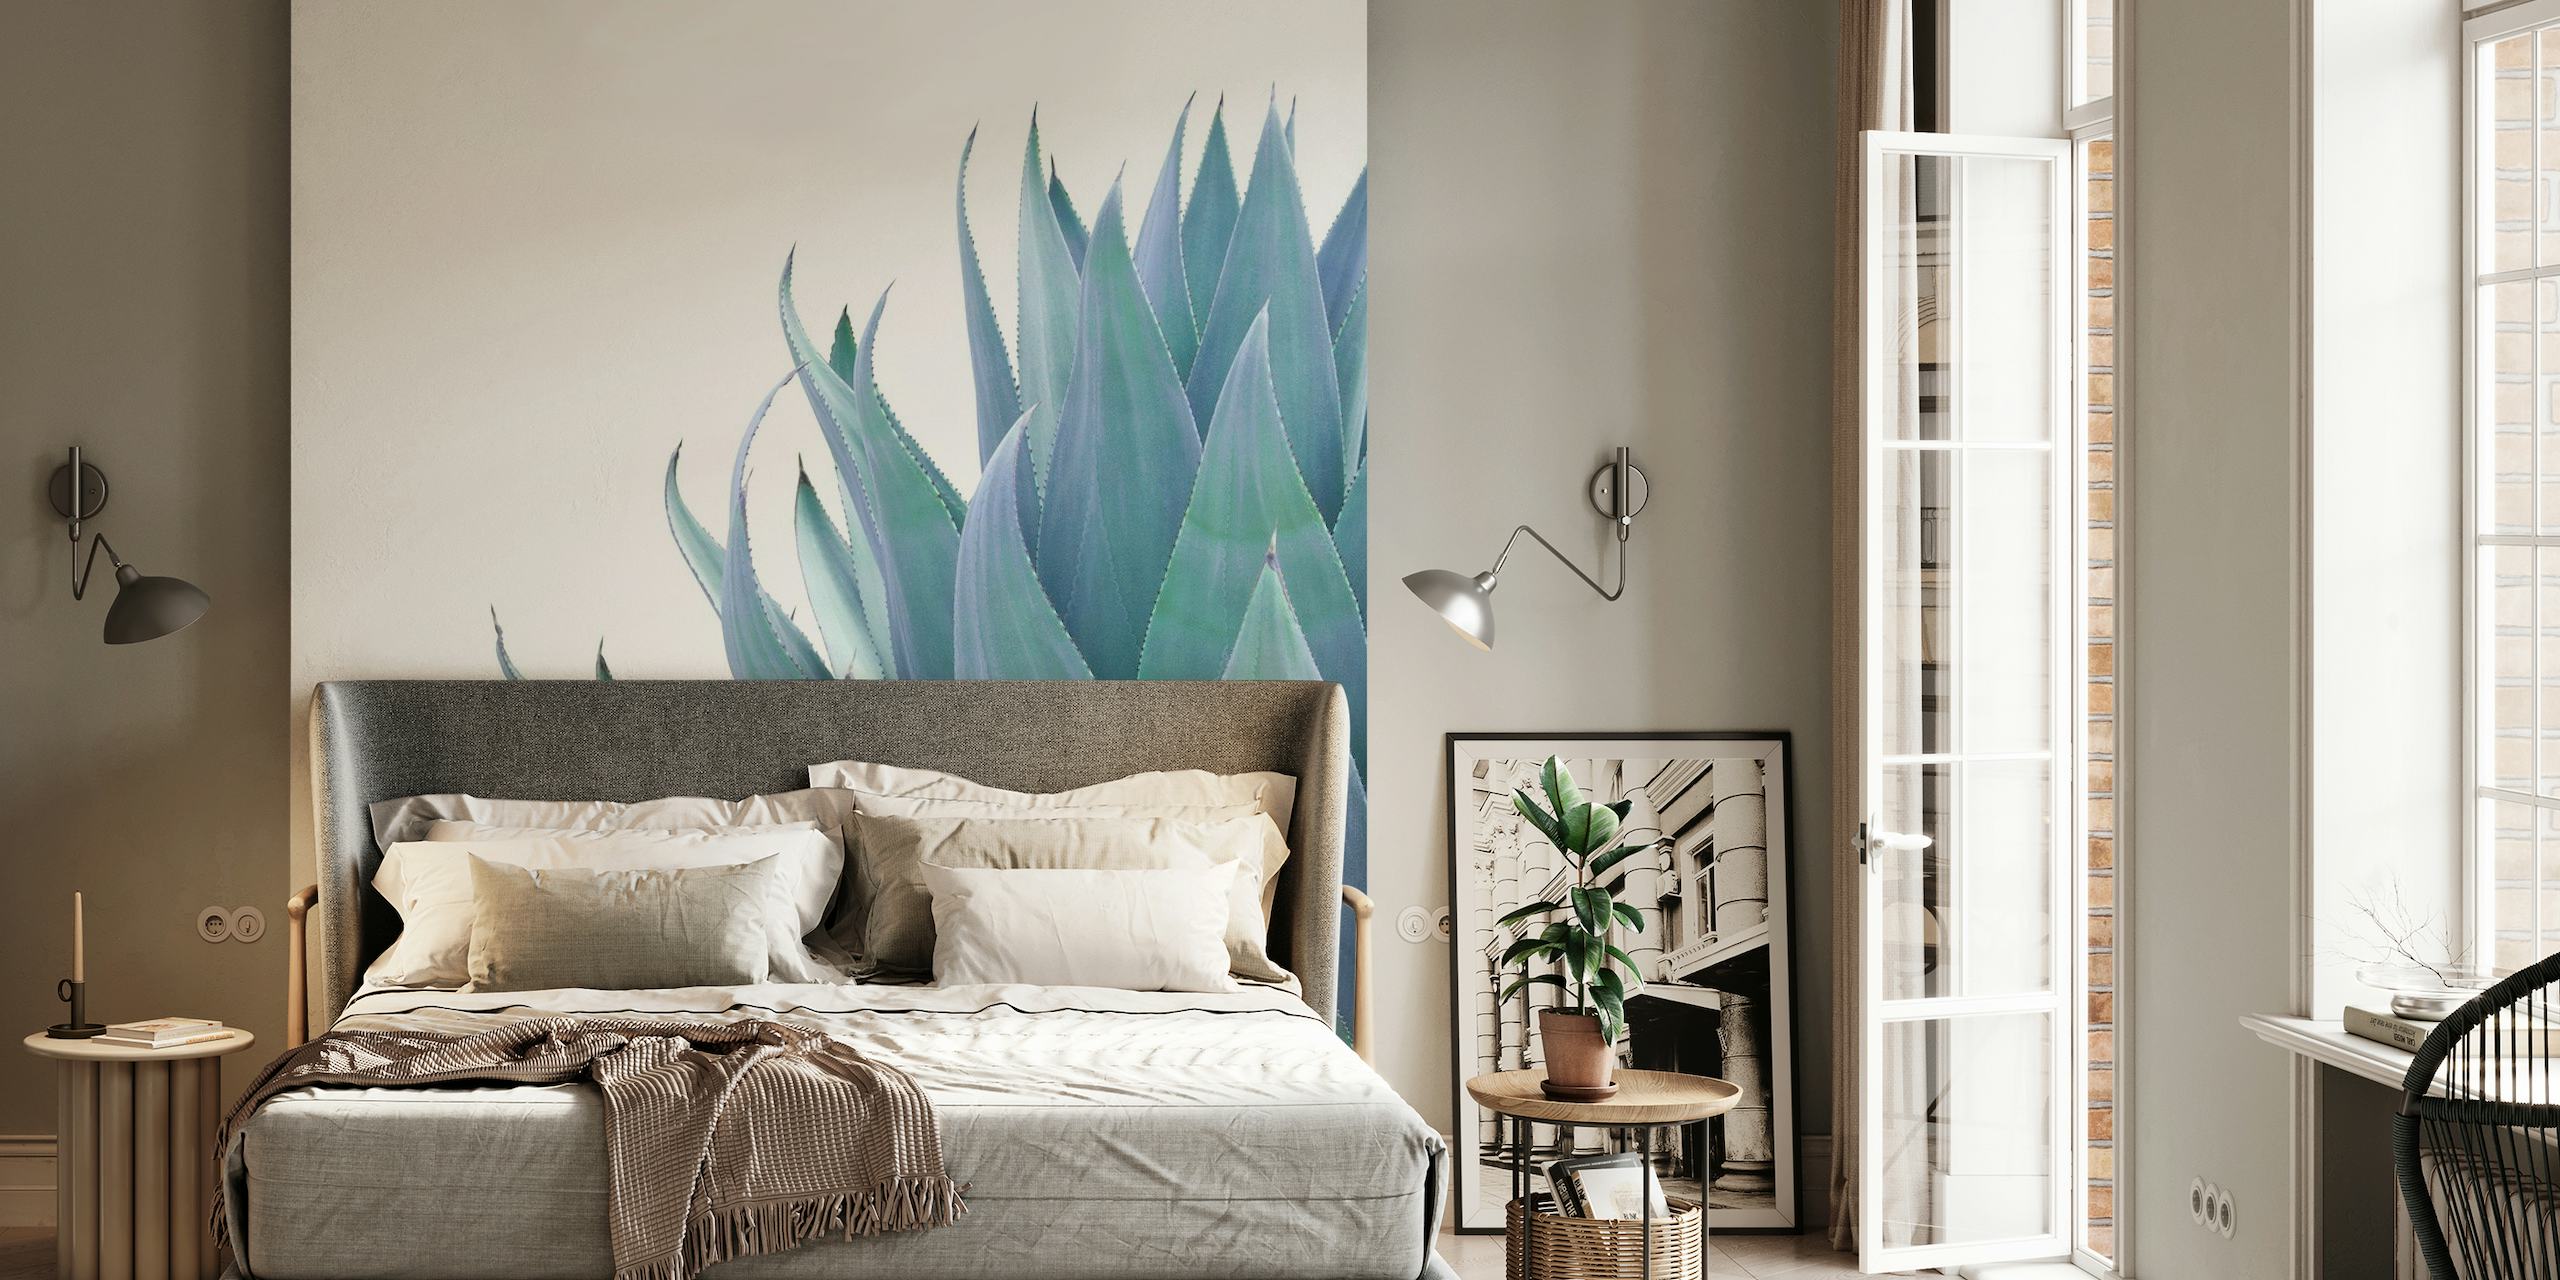 Minimalistisch fotobehang met agaveplanten in blauwgroene tinten